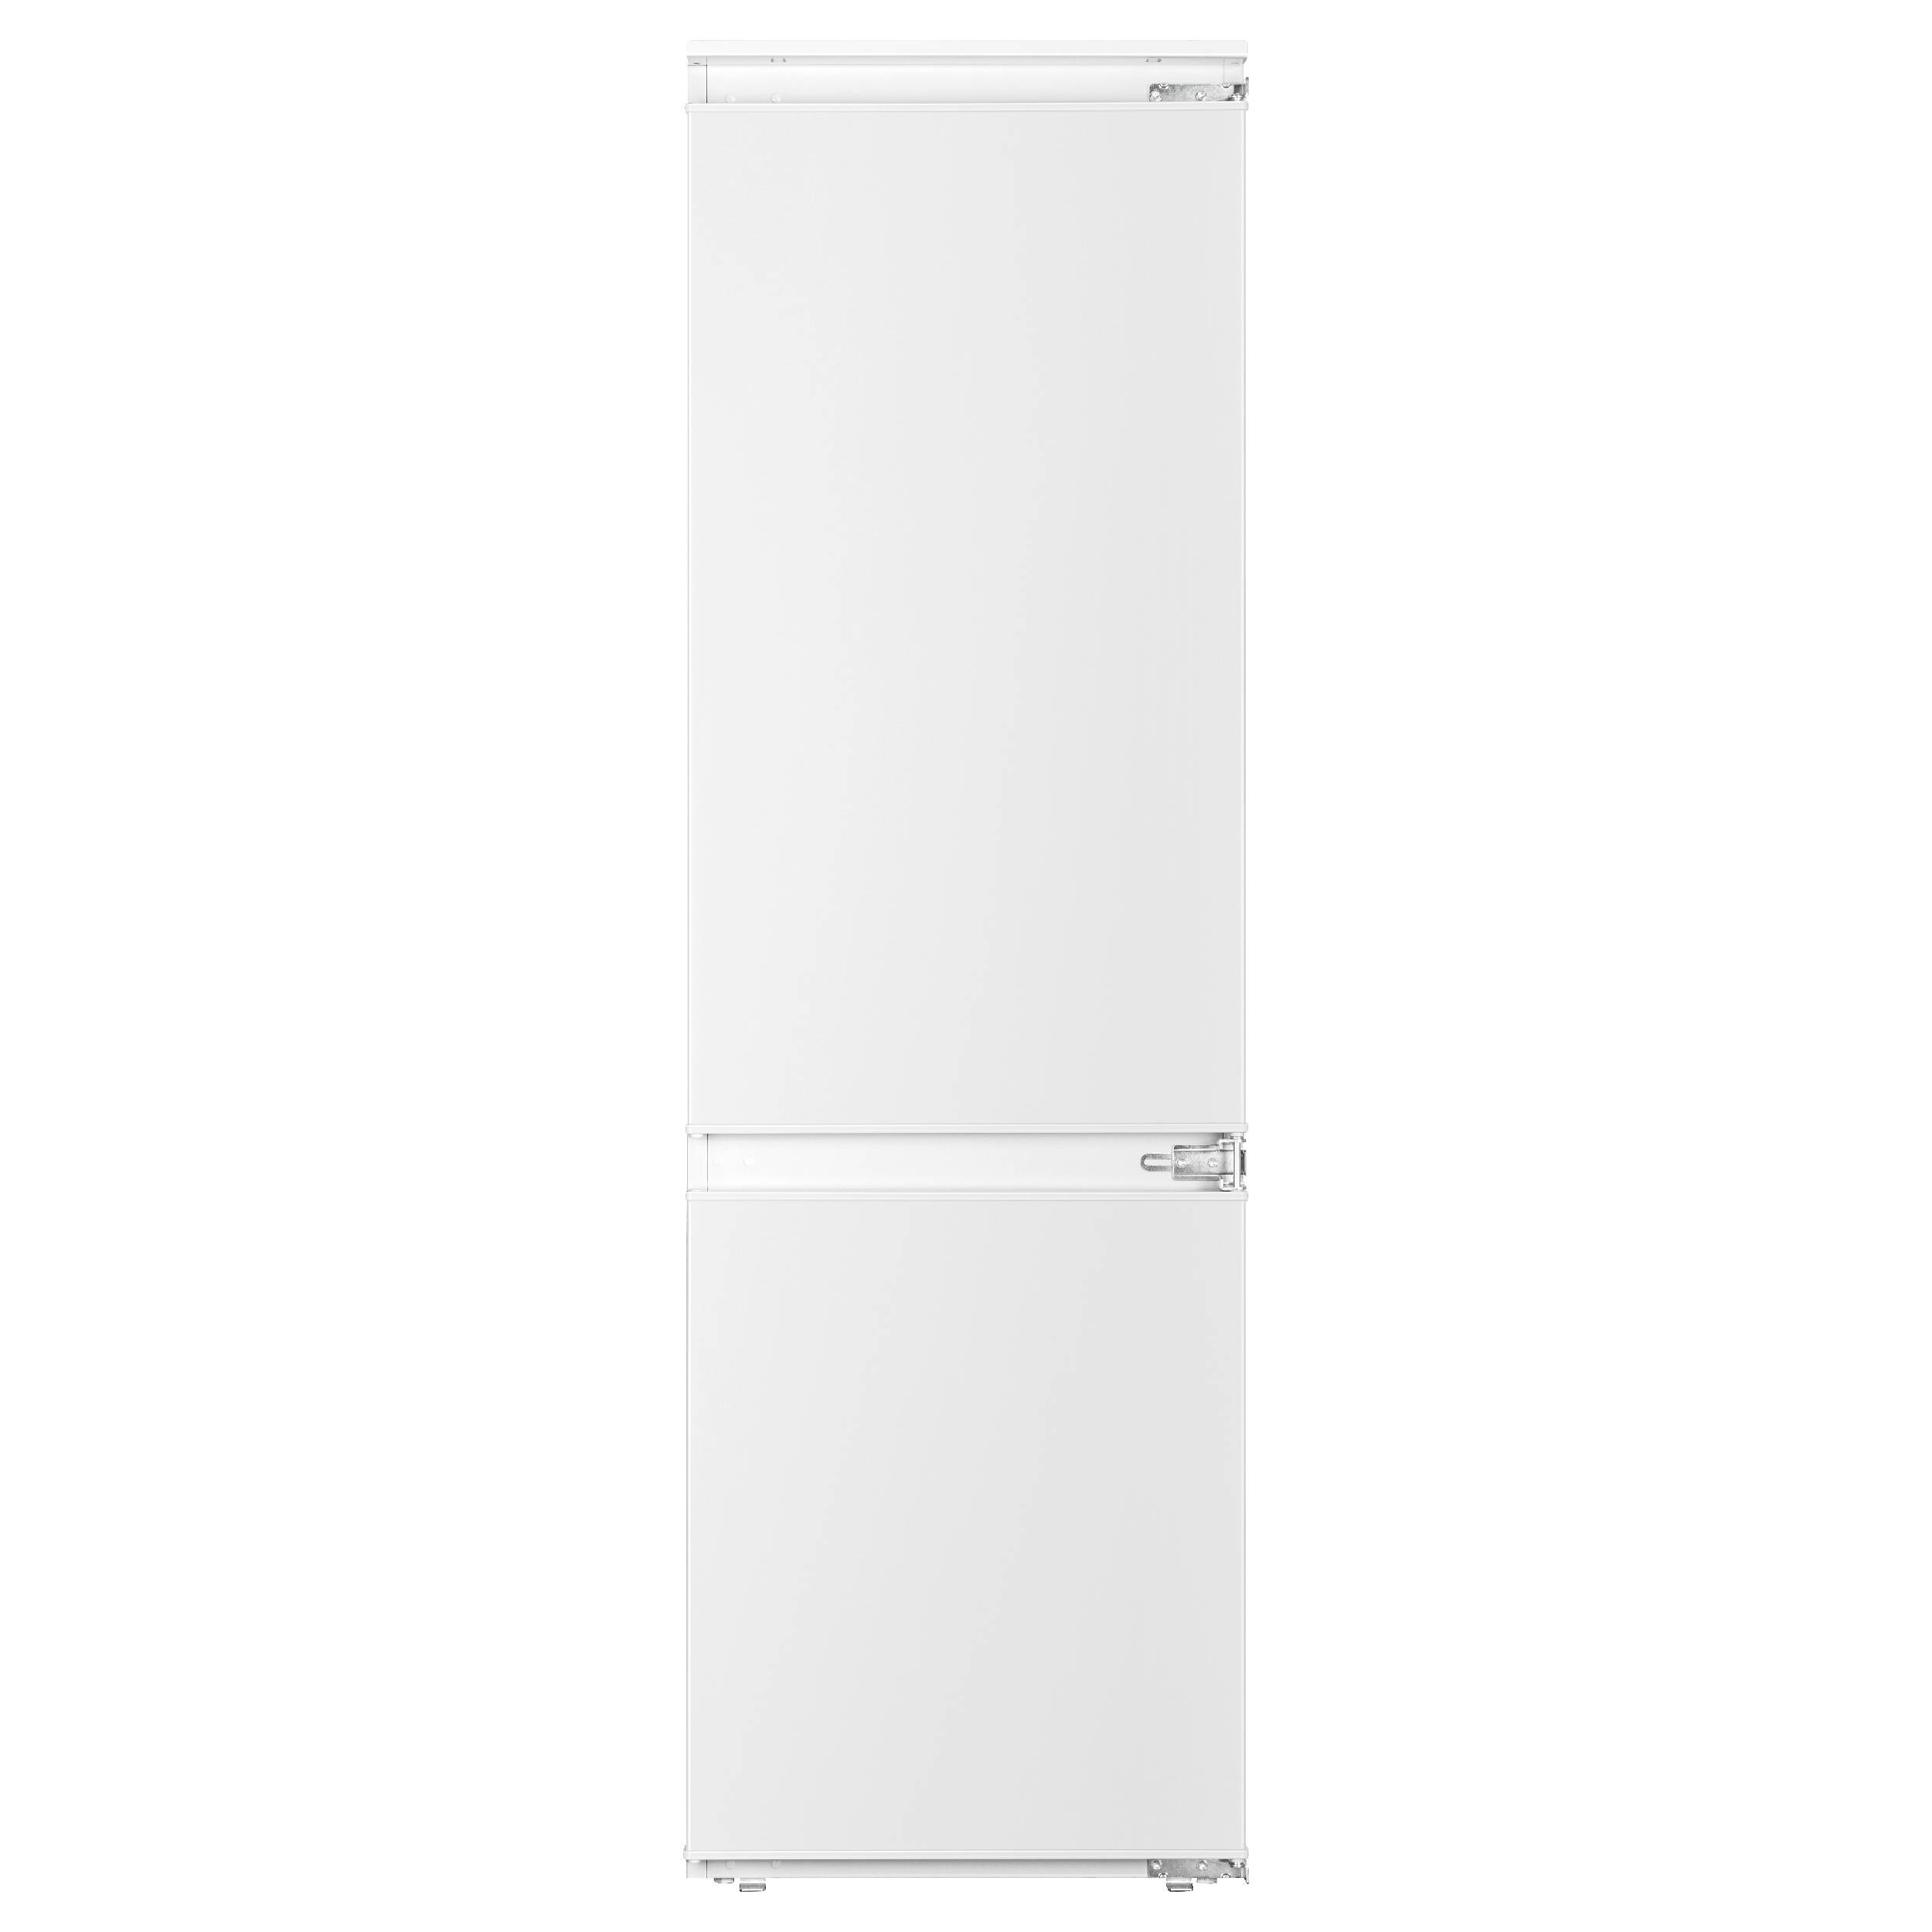 90997643 Встраиваемый холодильник FI 2211 D 54x176.9 см цвет белый STLM-0431463 EVELUX